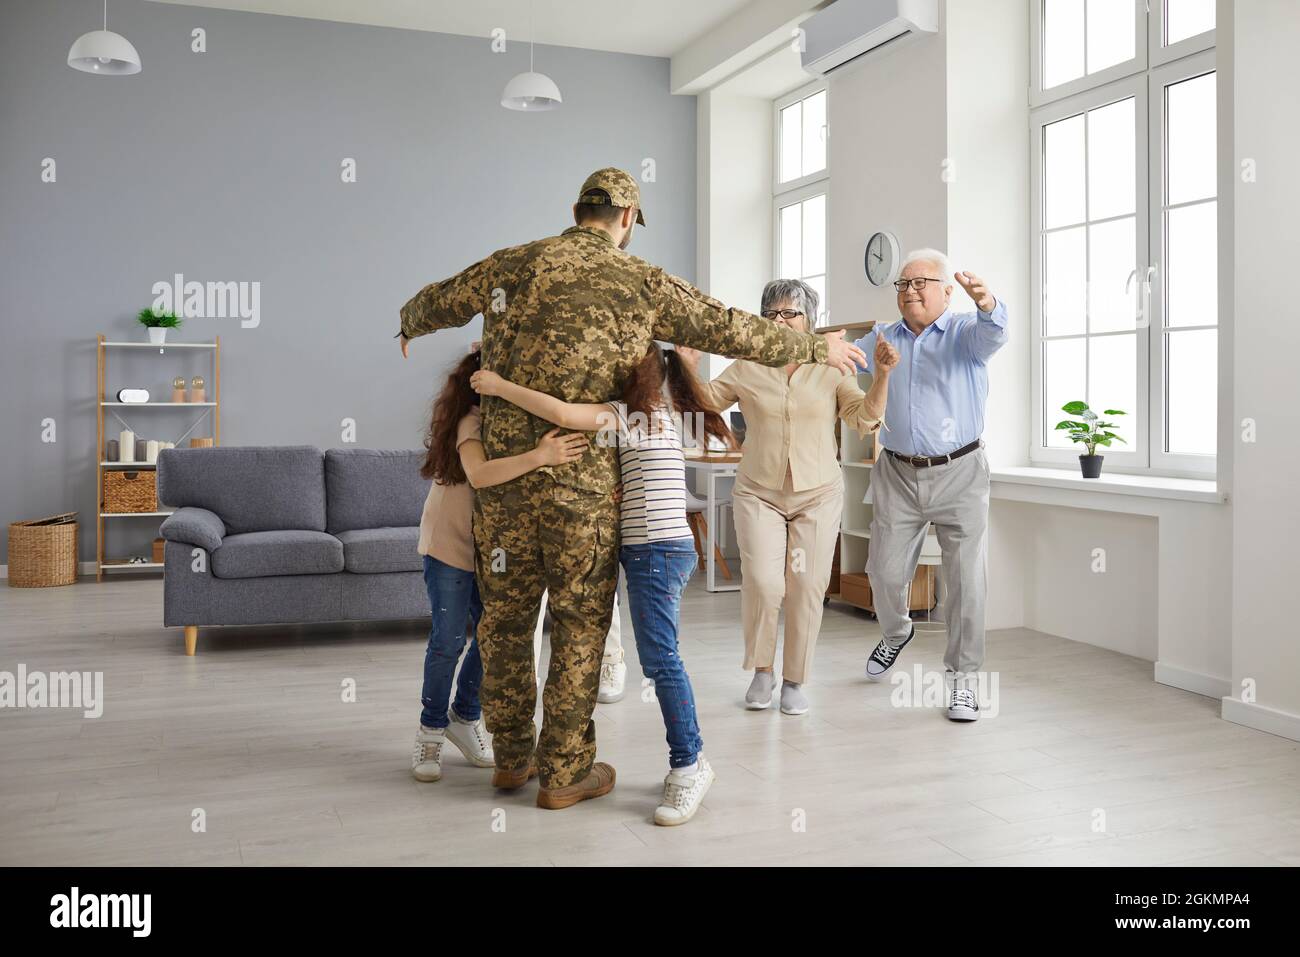 La famille est heureuse de voir un soldat vétéran qui est revenu chez lui après le service militaire Banque D'Images